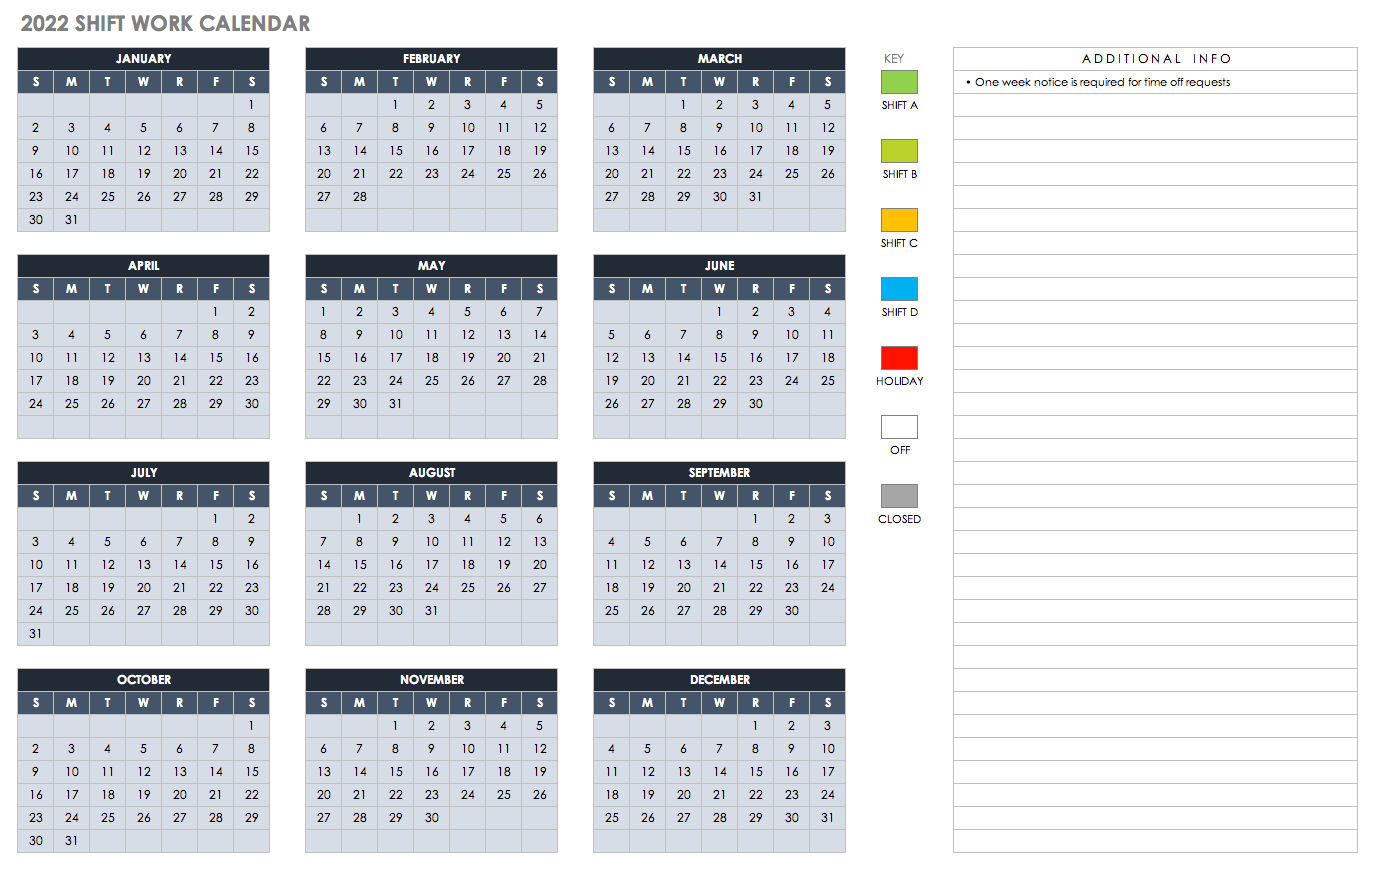 Monthly Shift Work Calendar 2022